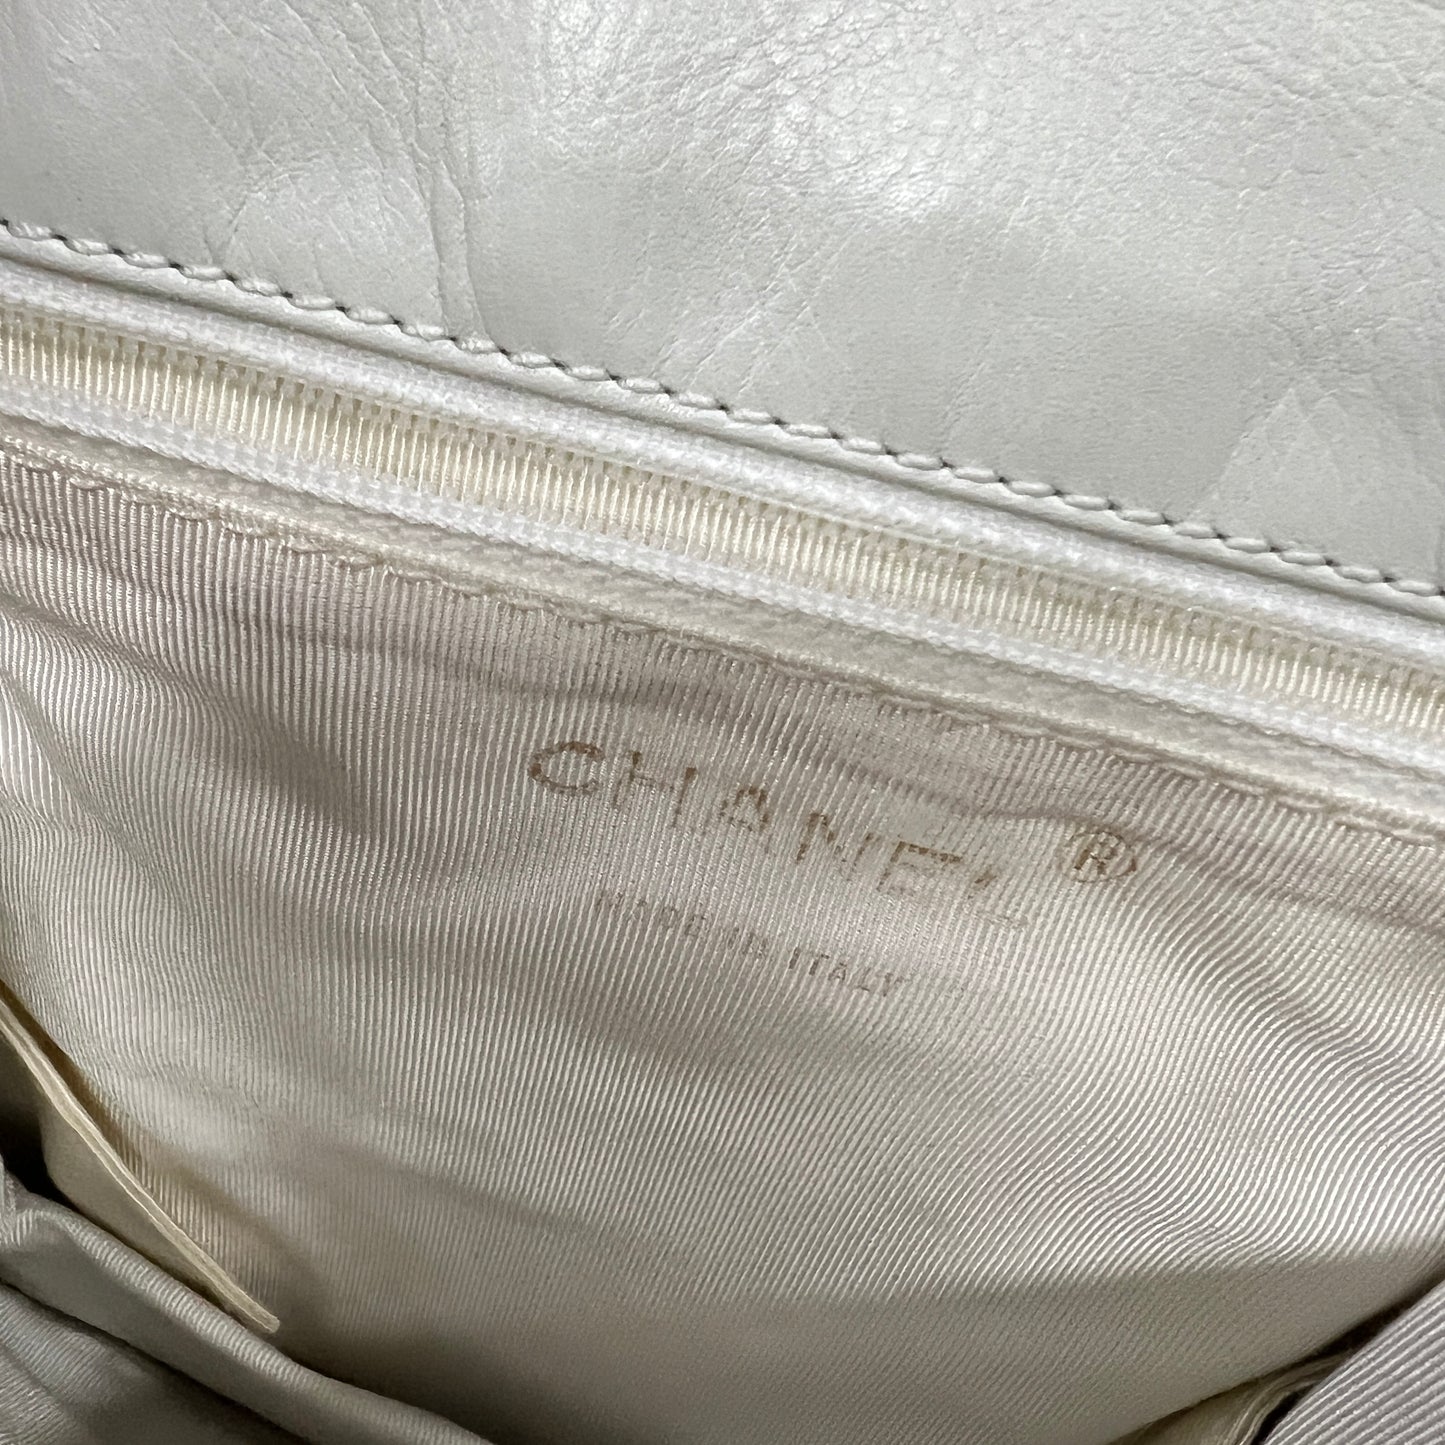 Chanel envelope shoulder bag vip collection